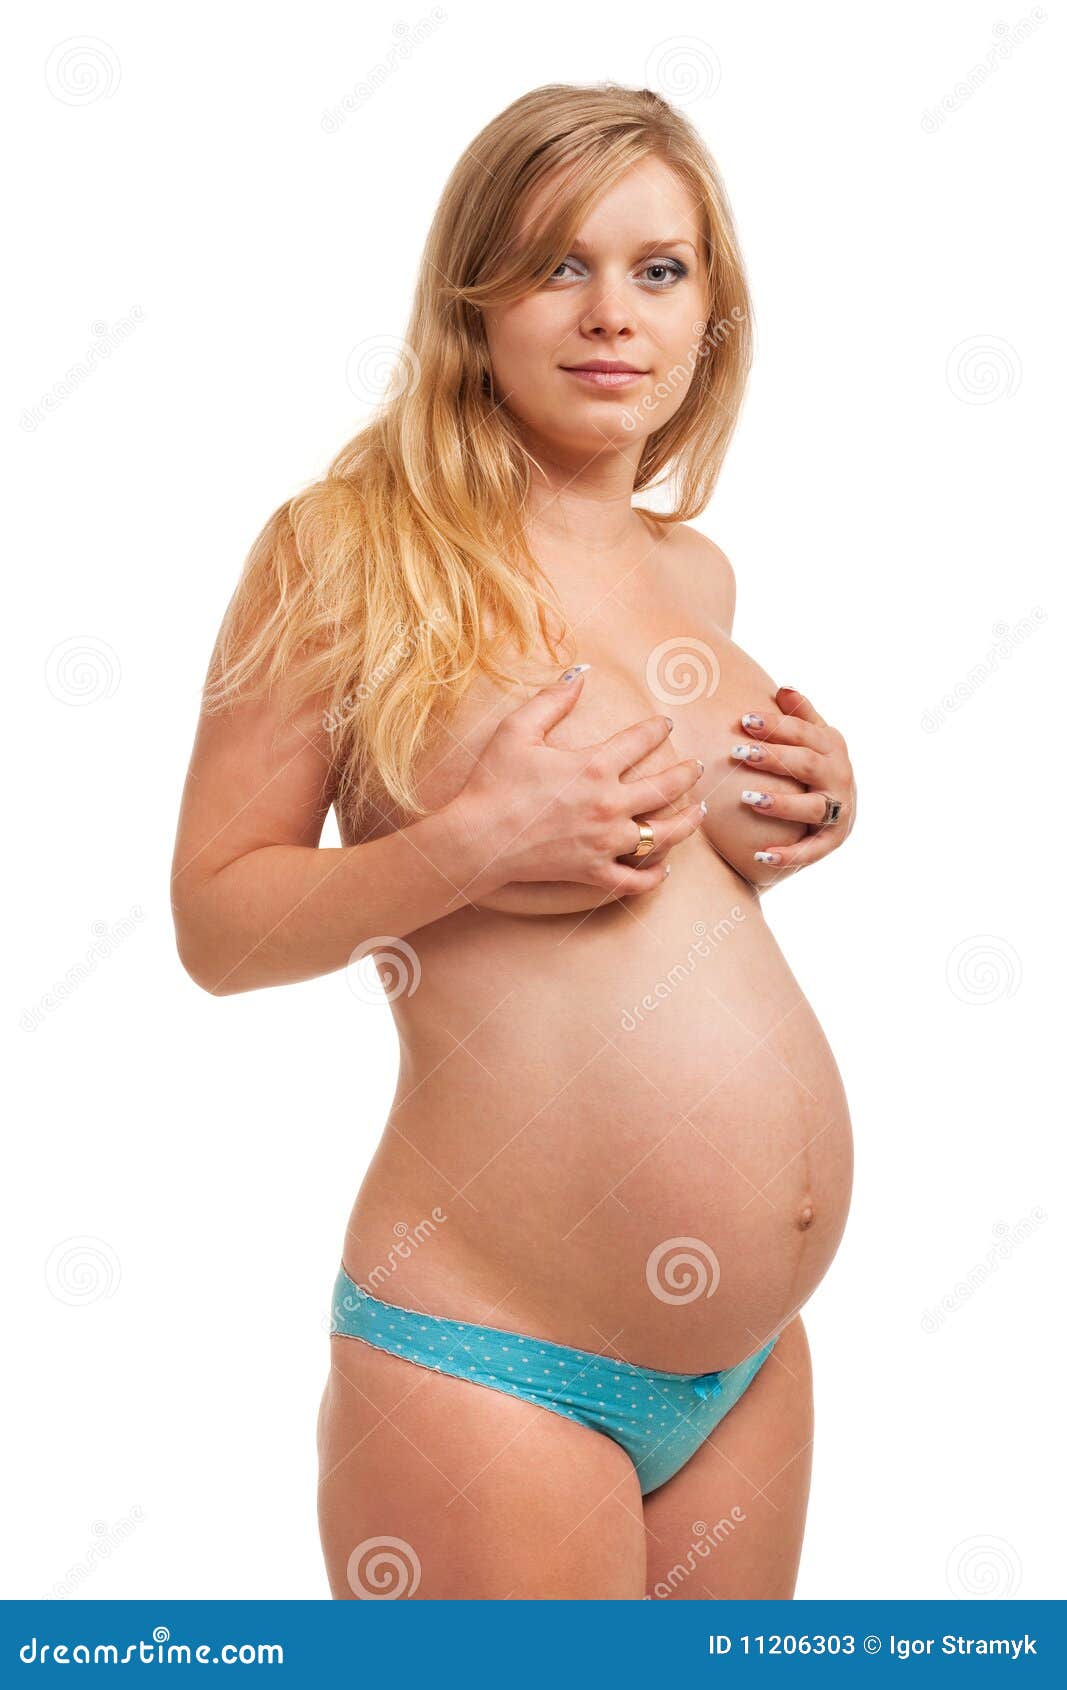 беременна а грудь обычная фото 20